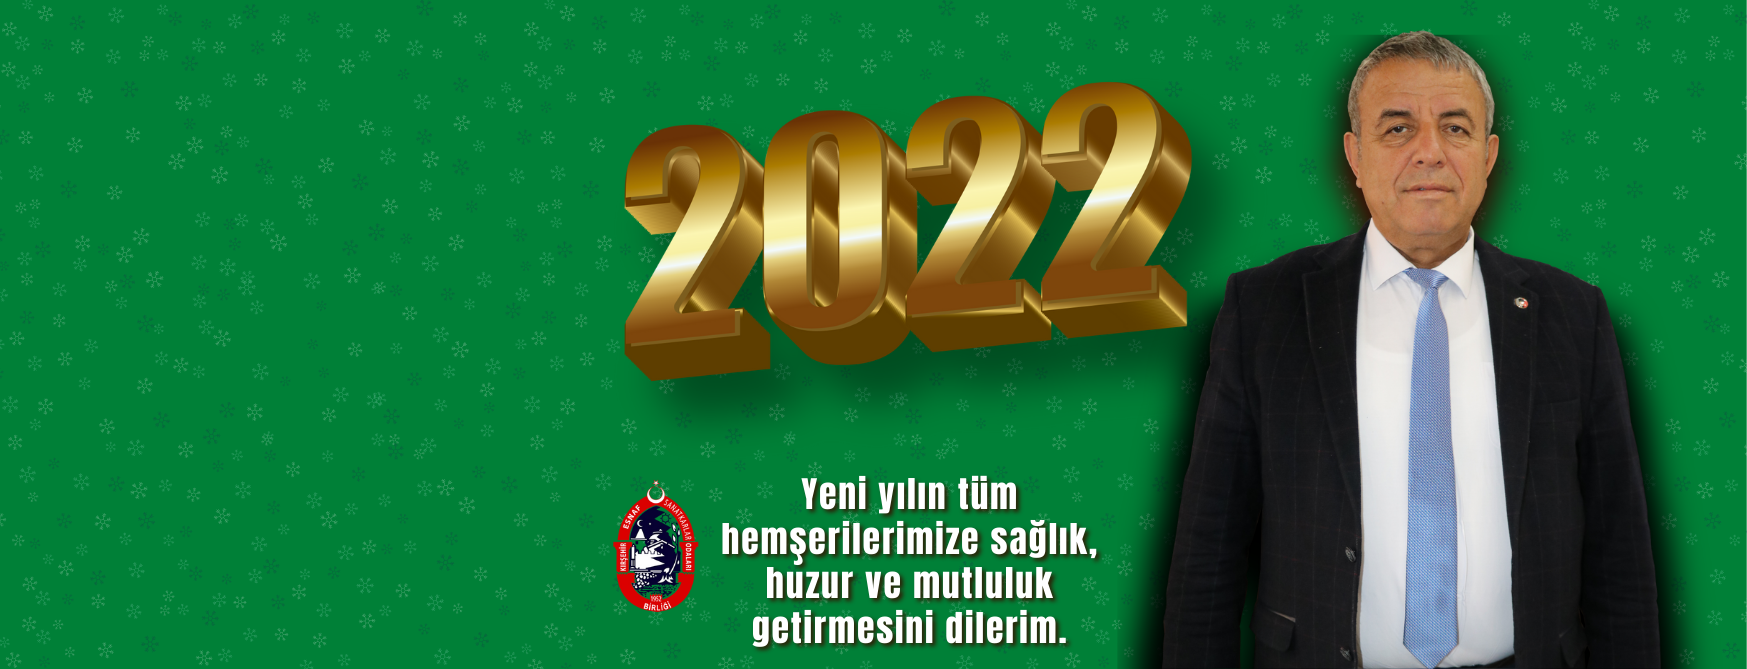 Başkan Öztürk'ten <br>Yeni Yıl Mesajı